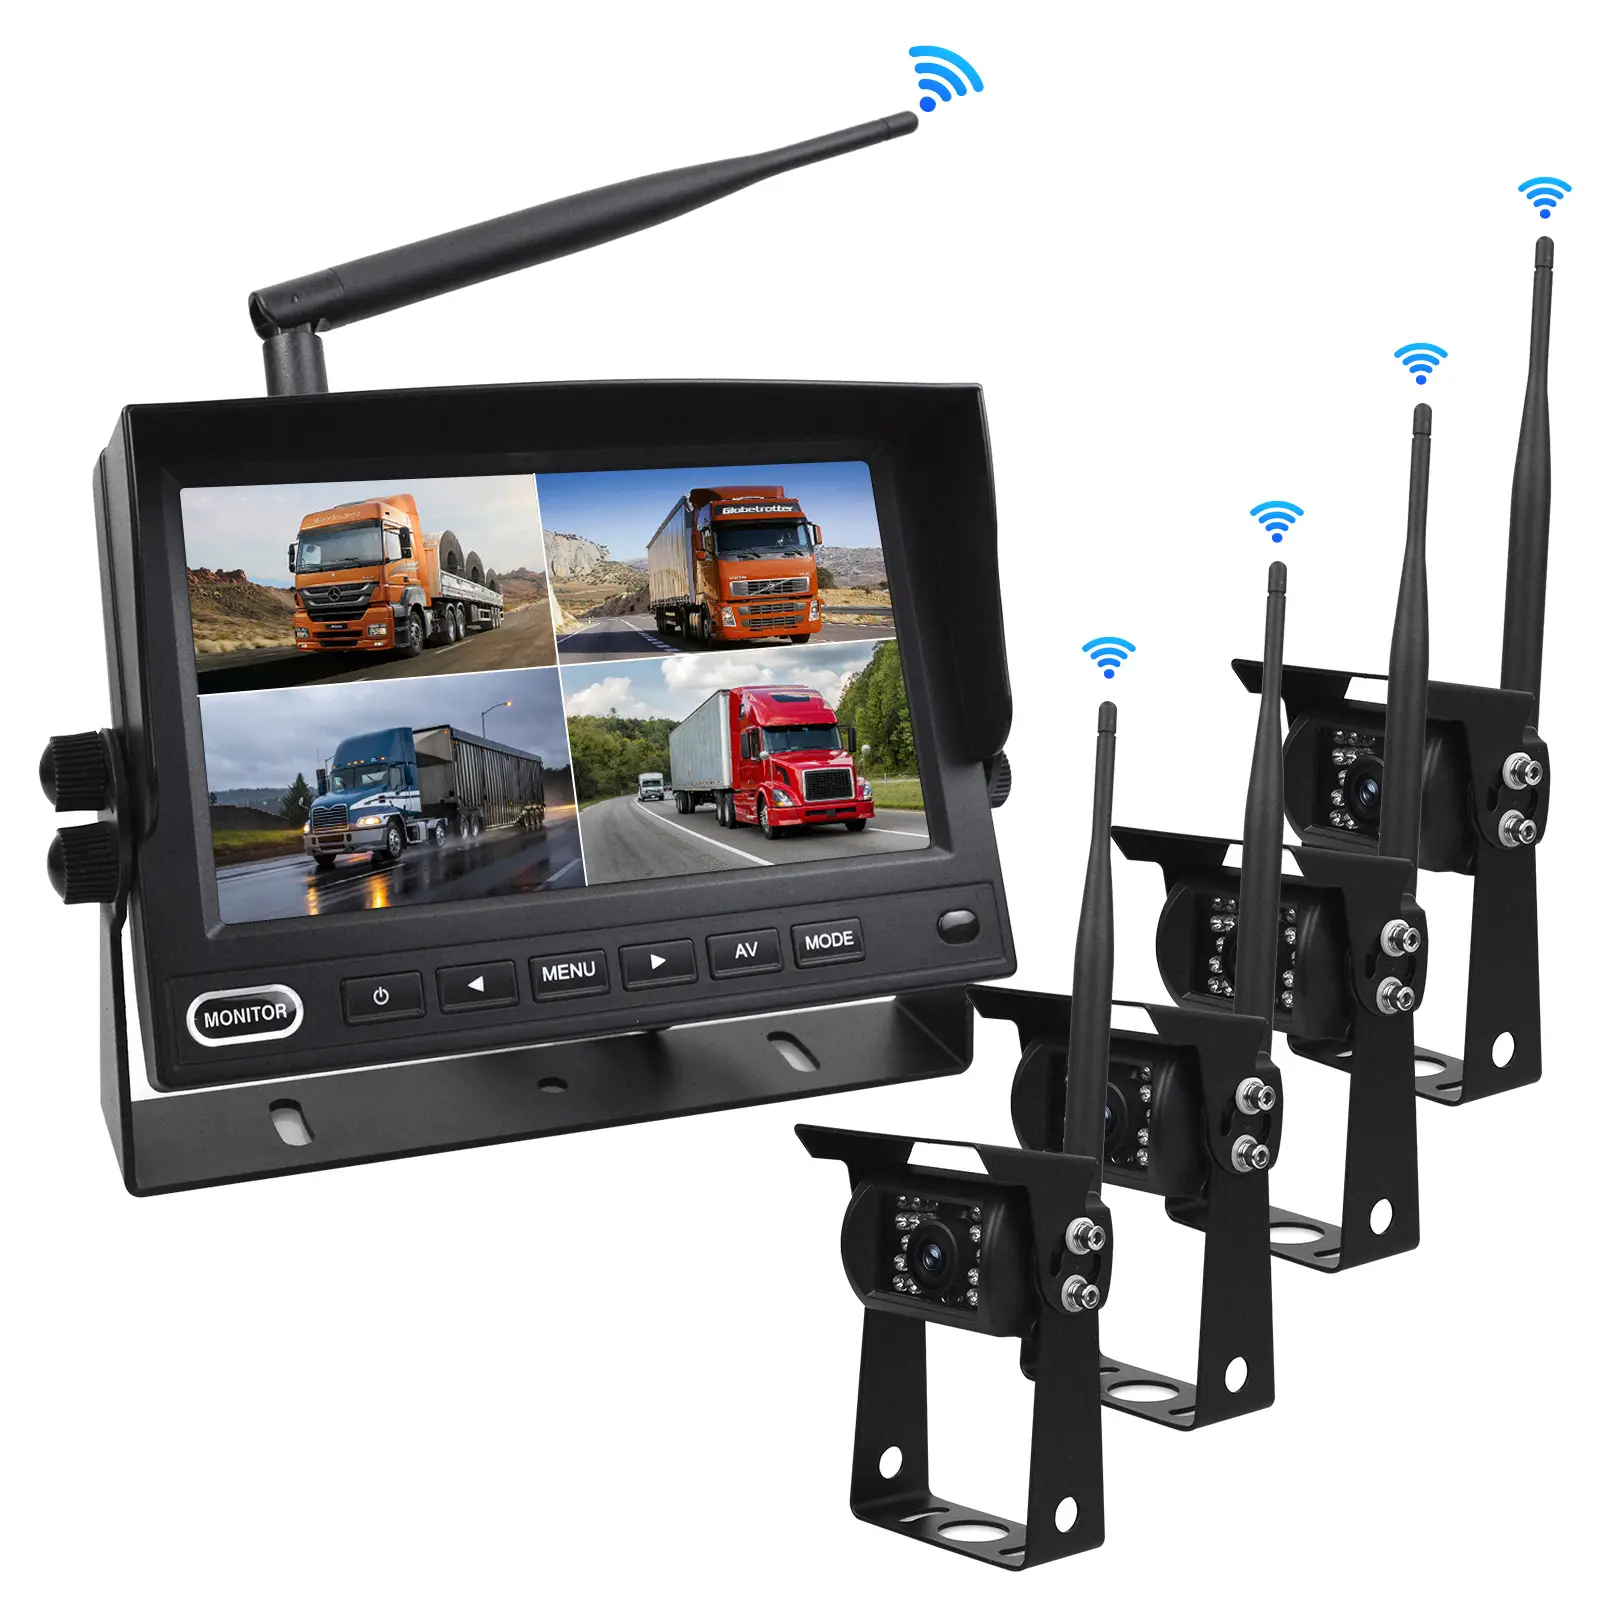 AHD 1080P 4CH 트럭 무선 후면보기 시스템 7 인치 IPS 모니터가있는 디지털 무선 차량 백업 서라운드보기 카메라 시스템